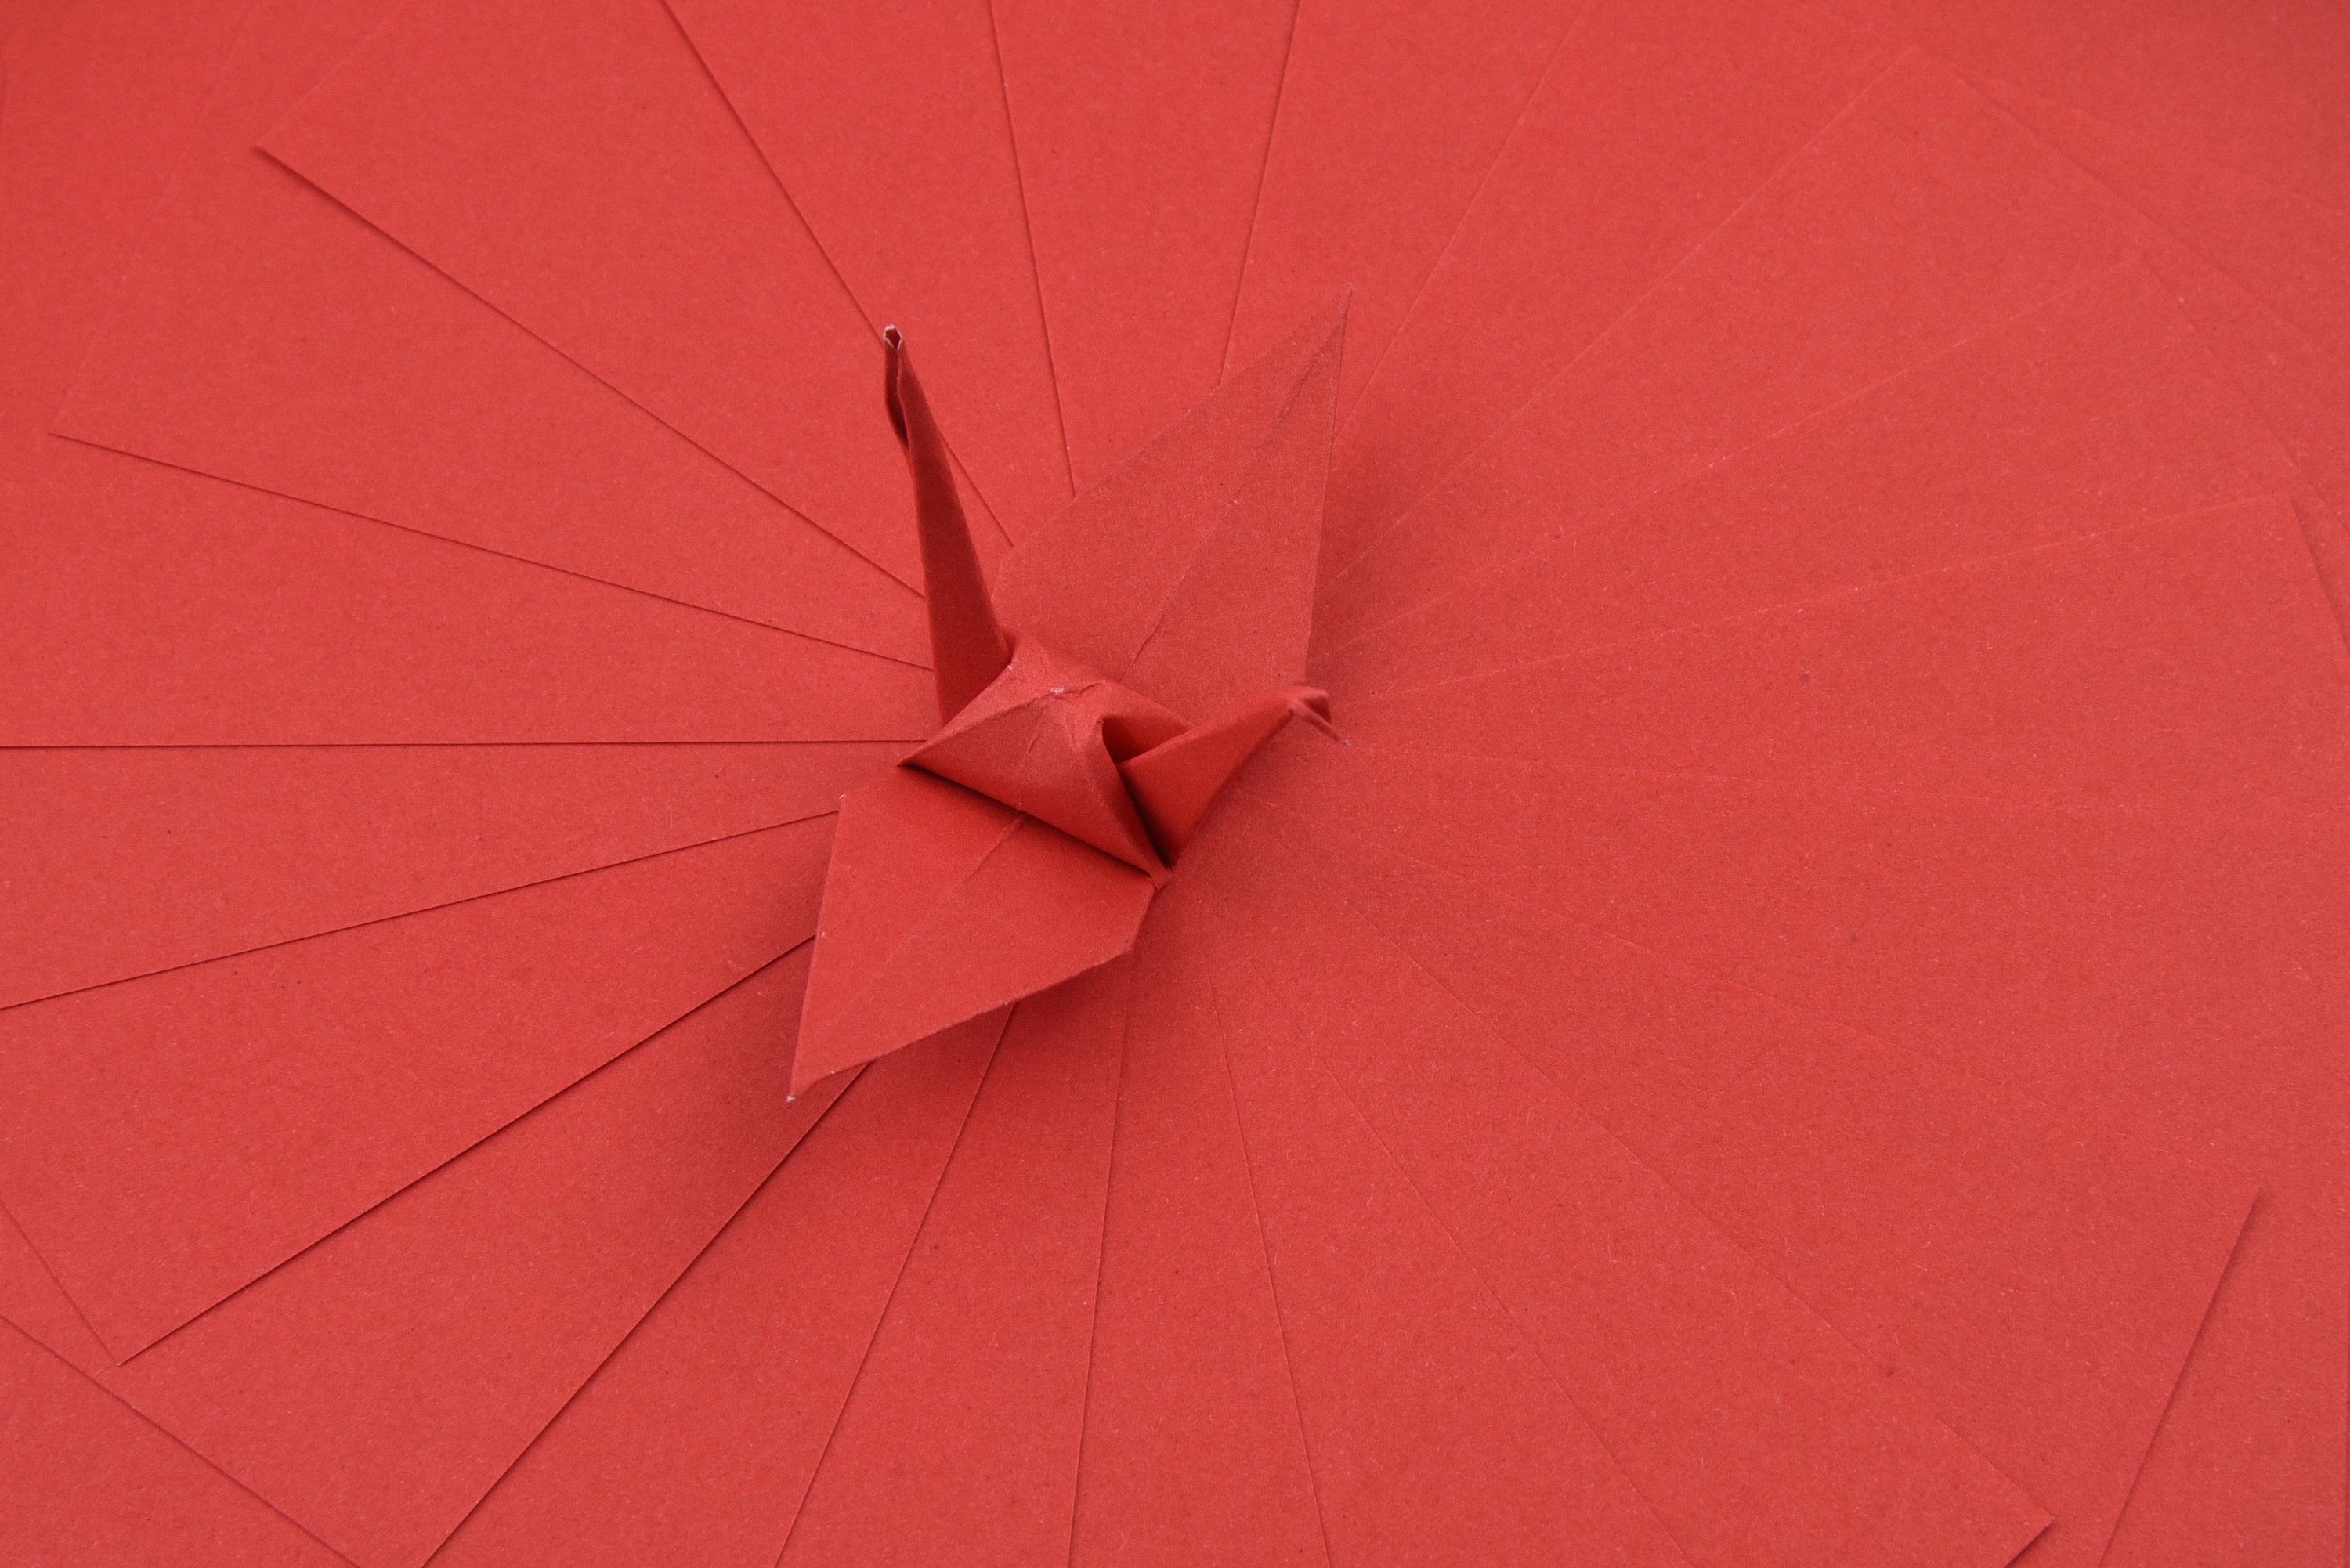 100 Hojas de Papel Origami Rojo - 3x3 pulgadas - Paquete de Papel Cuadrado para Plegar, Grullas de Origami y Decoración - S16